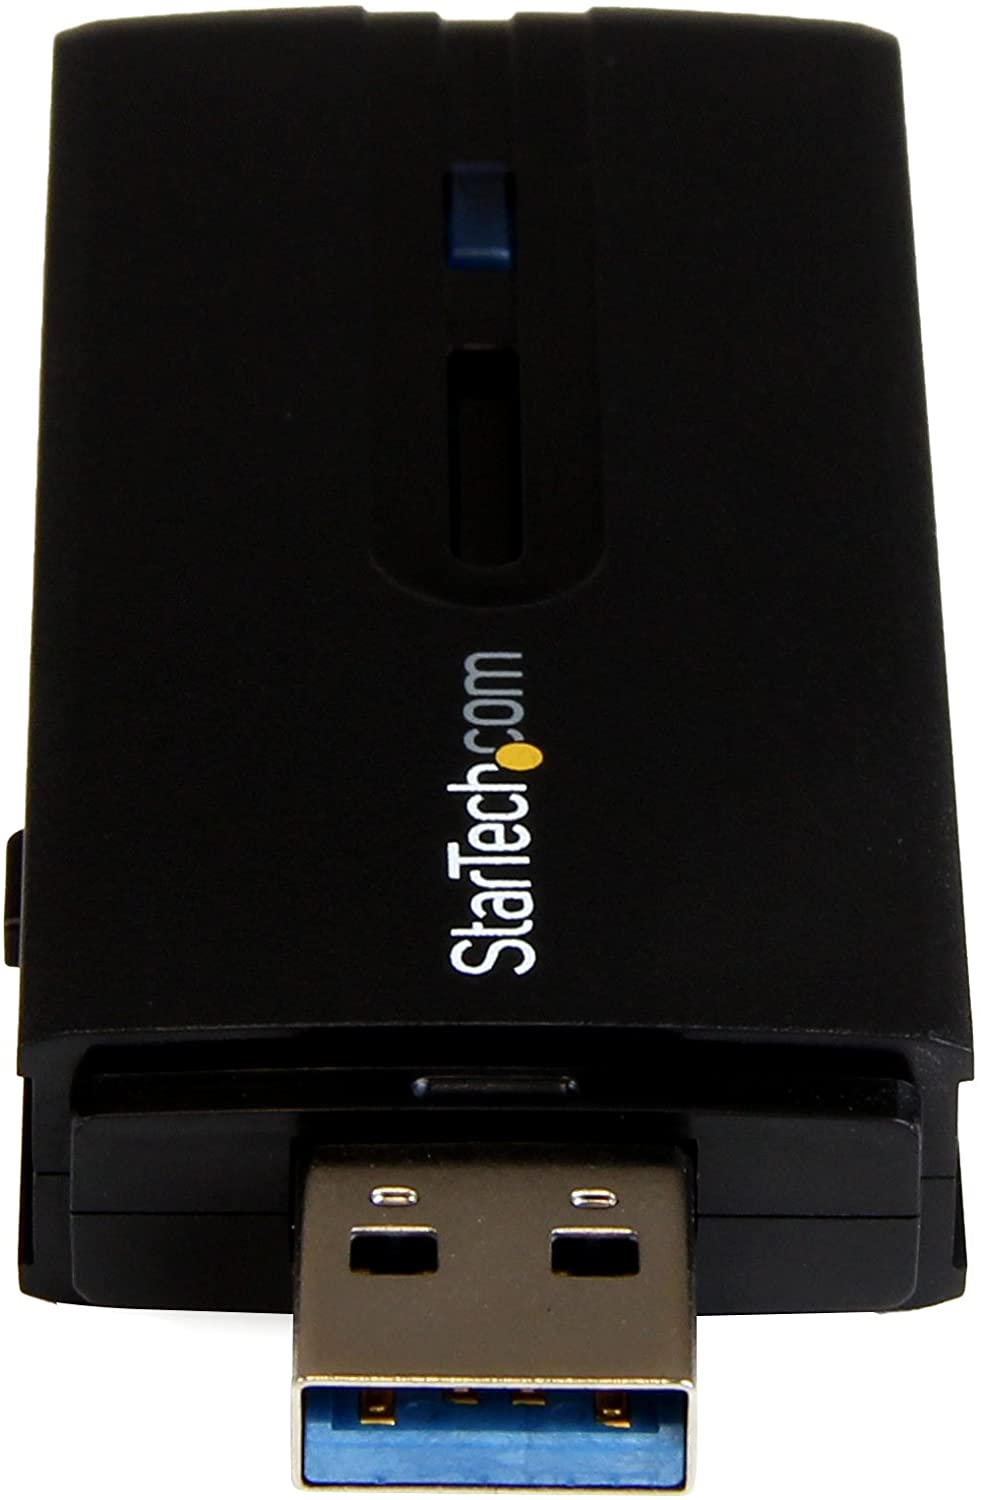 StarTech.com USB 3.0 AC1200 Dual Band Wireless-AC Network Adapter - 802.11ac WiFi Adapter - 2.4GHz / 5GHz USB Wireless - AC Network Card (USB867WAC22)